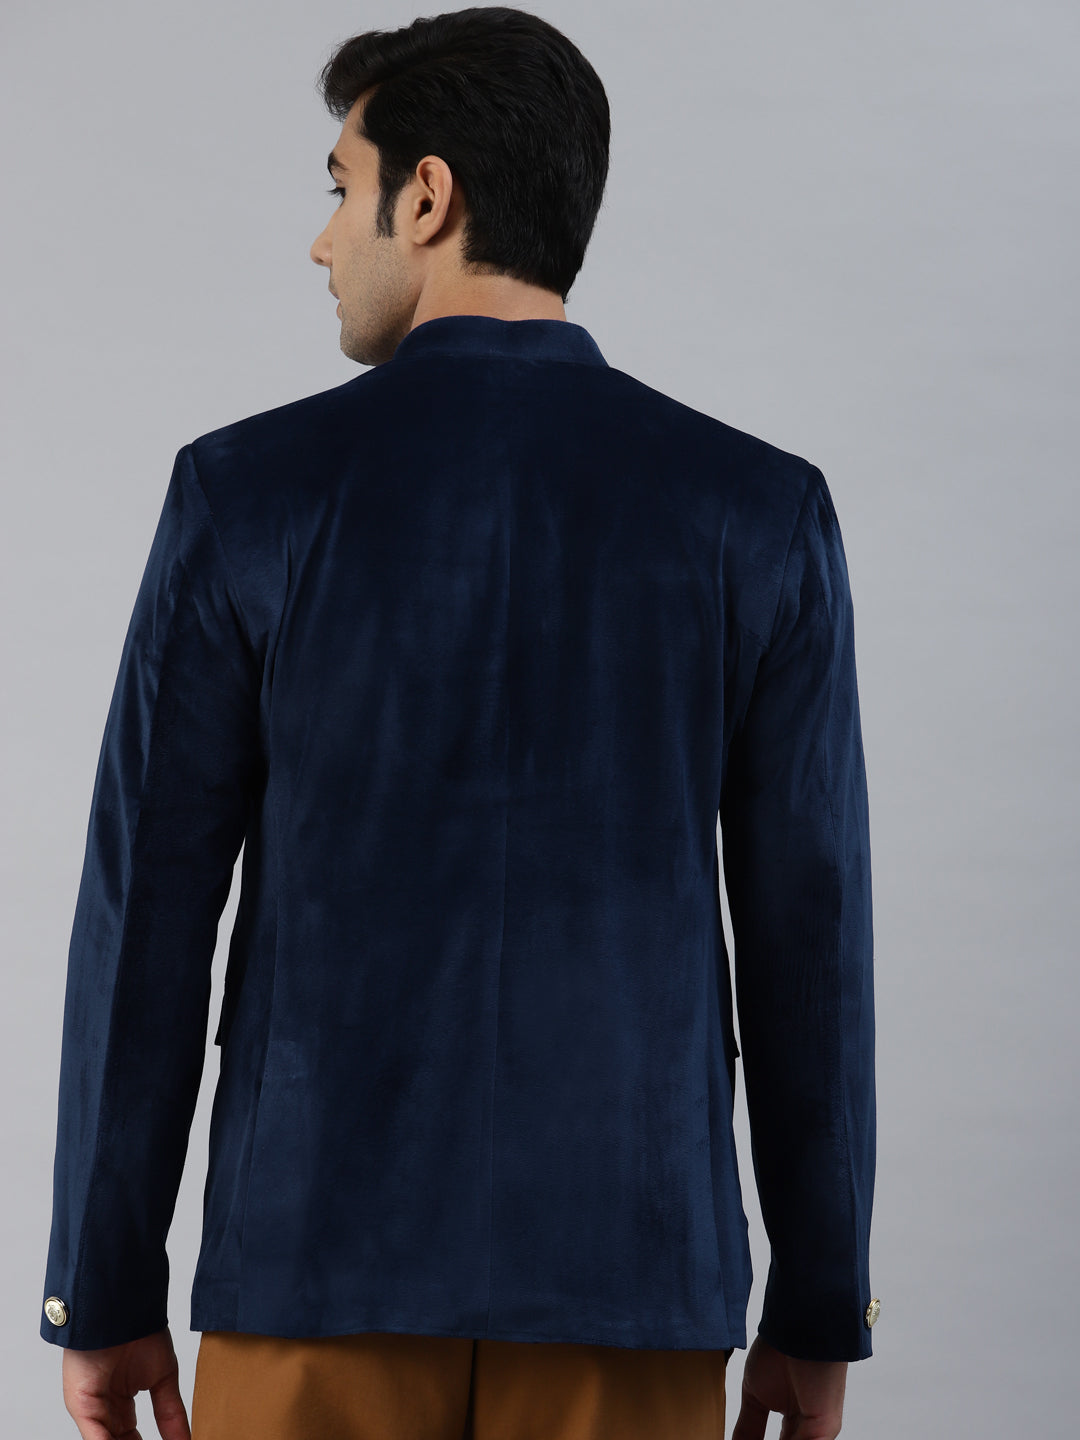 Luxrio Blazer Velvet Tuxedo for Men Navy Blue